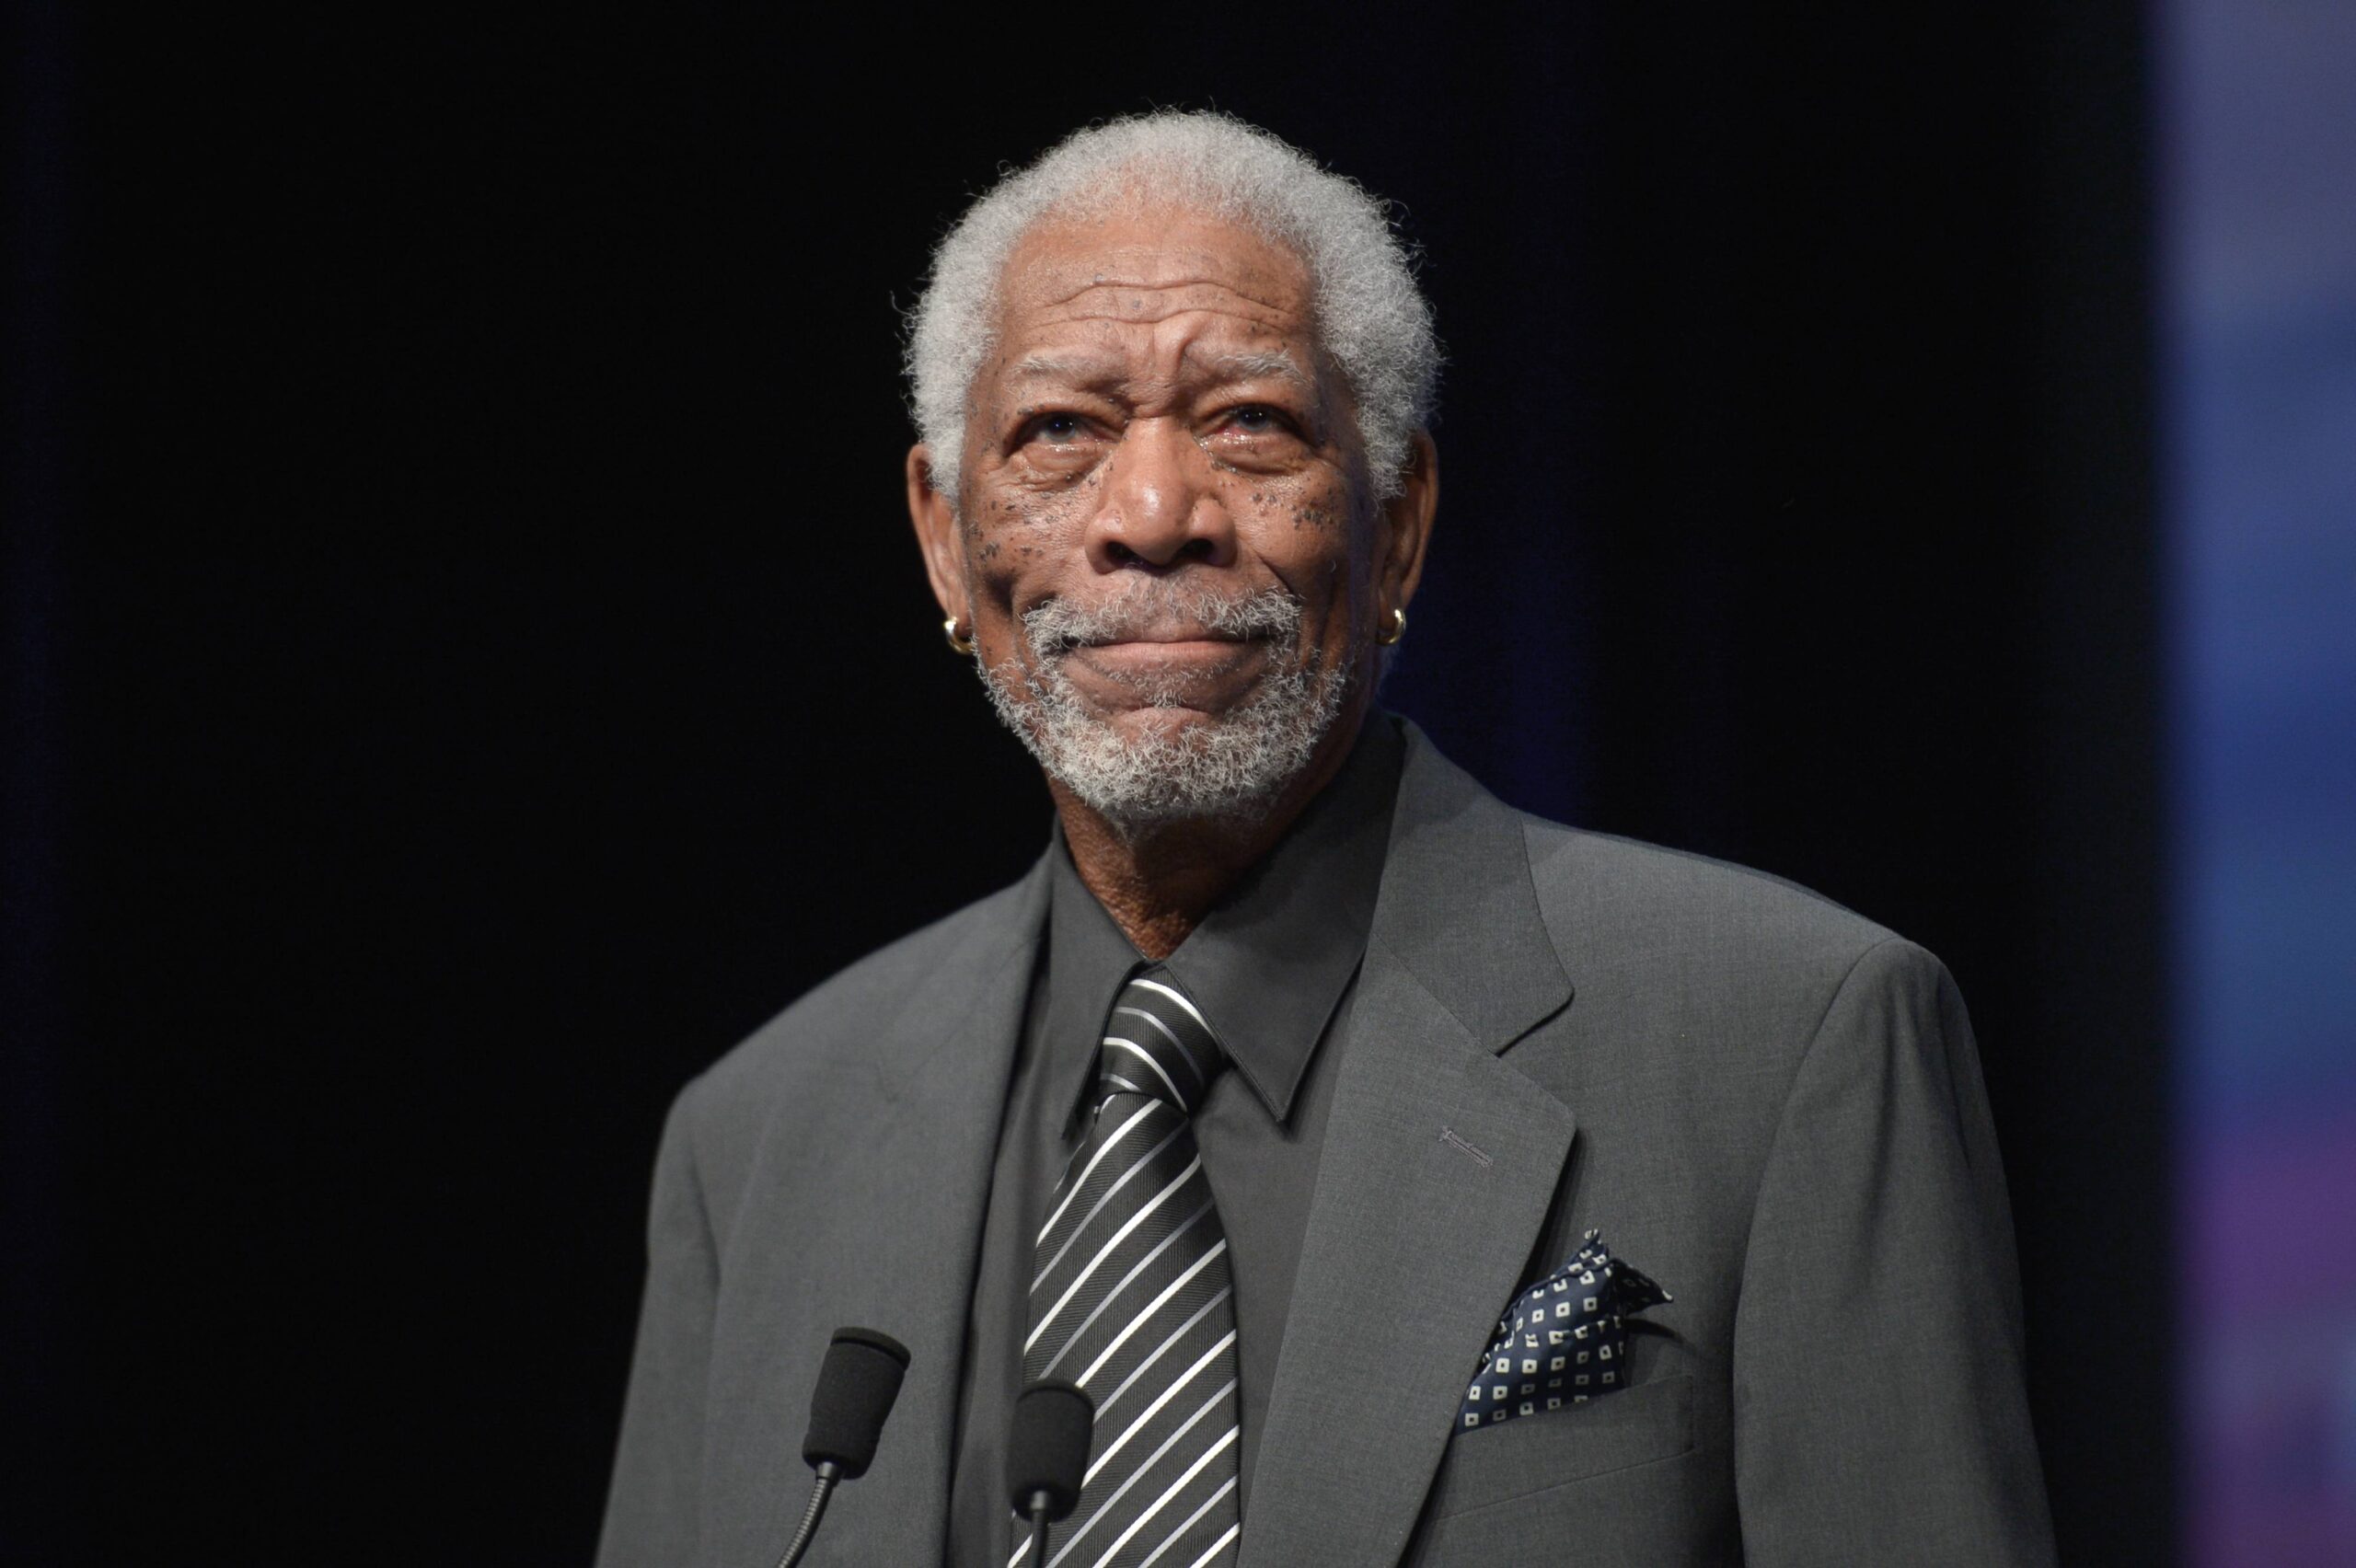 Filmy z Morganem Freemanem obejrzysz w CANAL+! Sprawdź największe hity